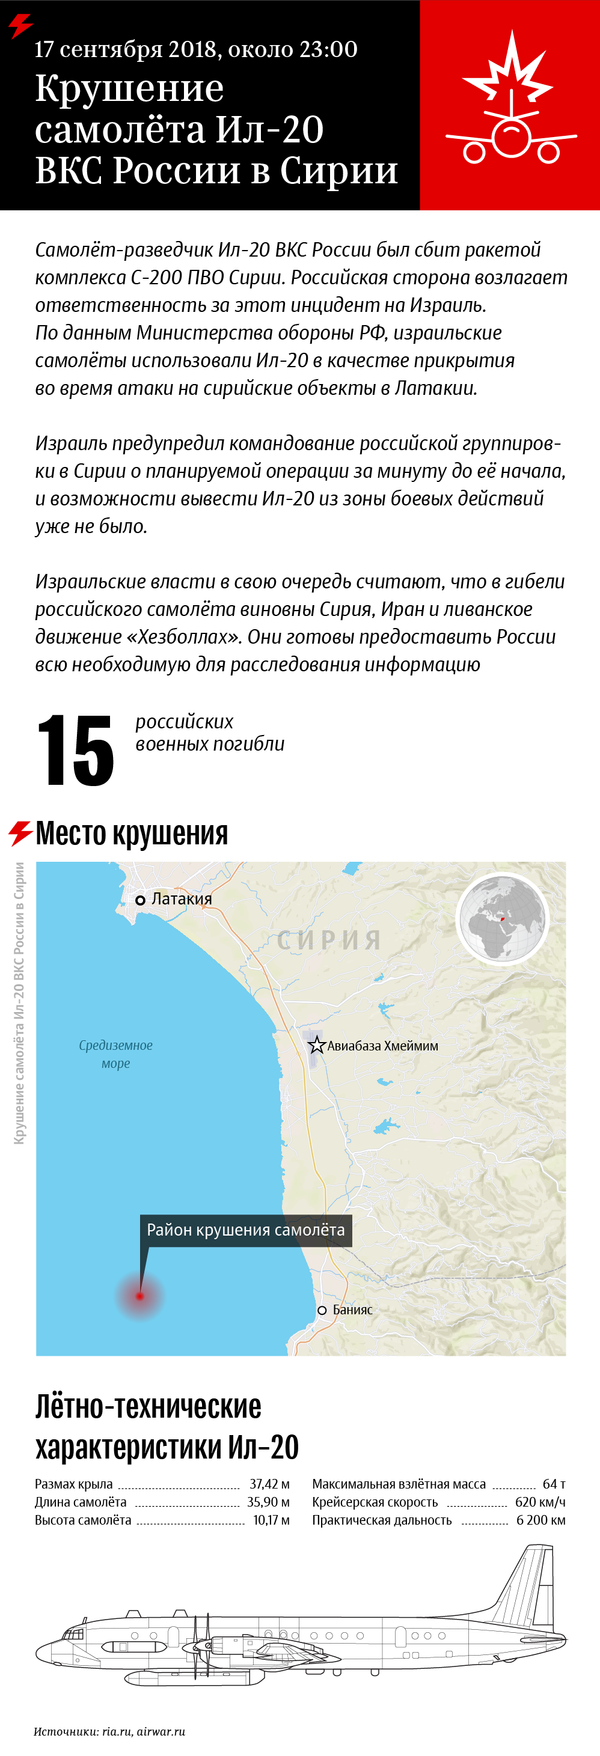 Крушение Ил-20 в Сирии: как и где все произошло - Sputnik Таджикистан